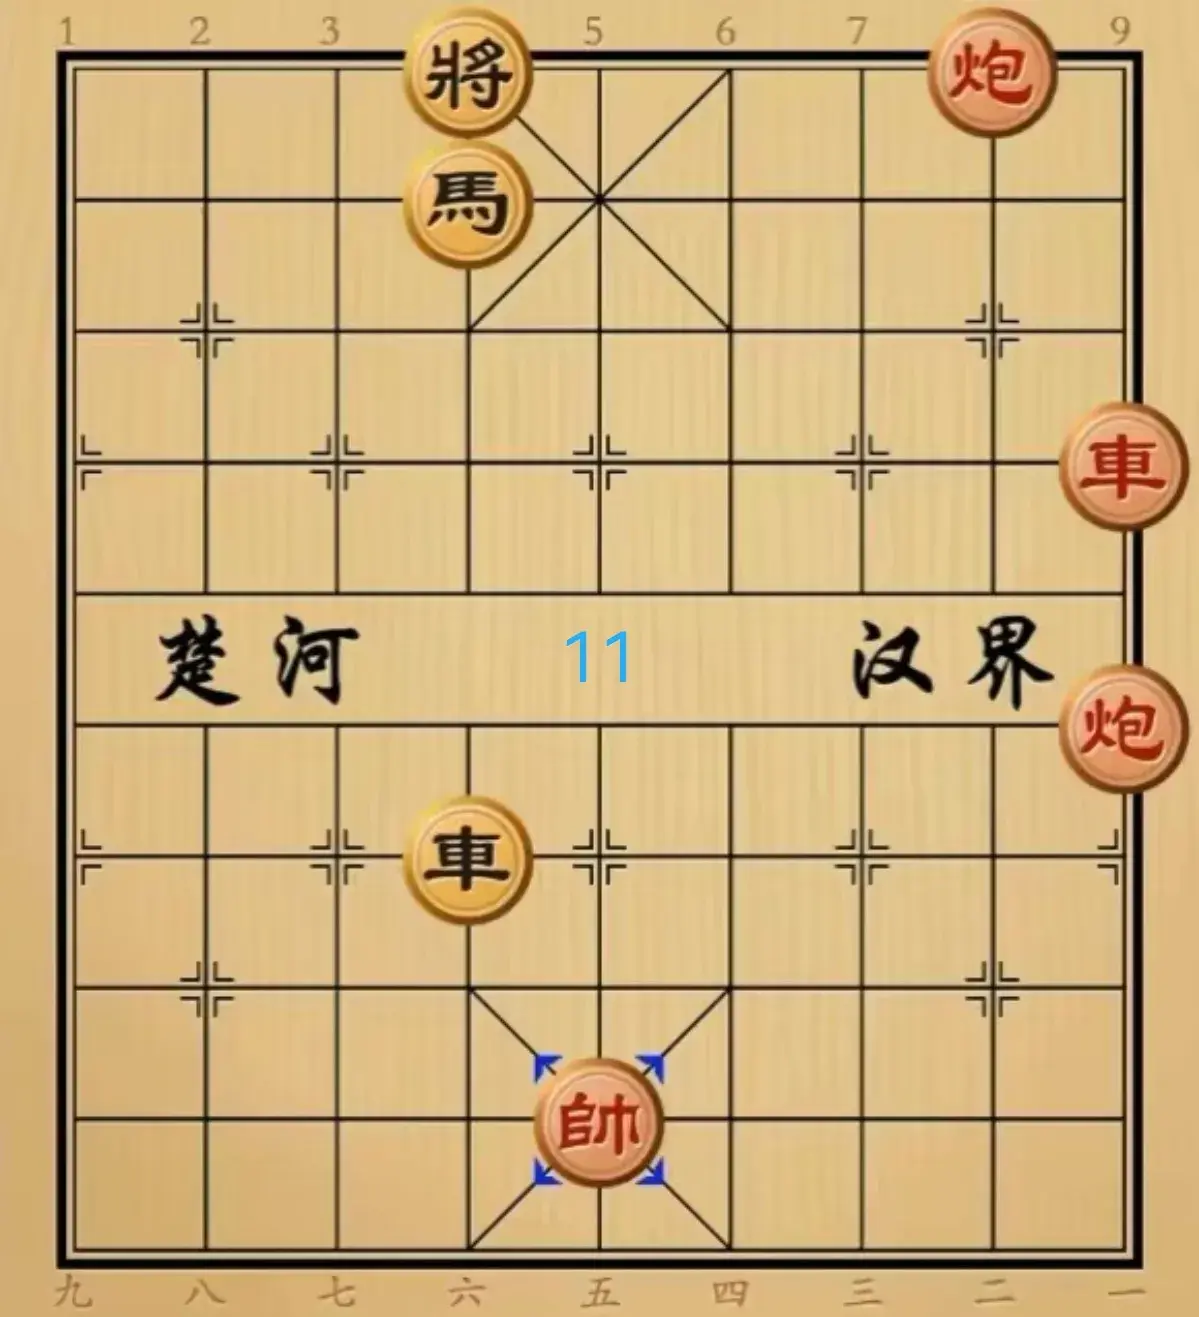 残局象棋游戏攻略（江湖象棋残局的正解和错误的走法）-图11